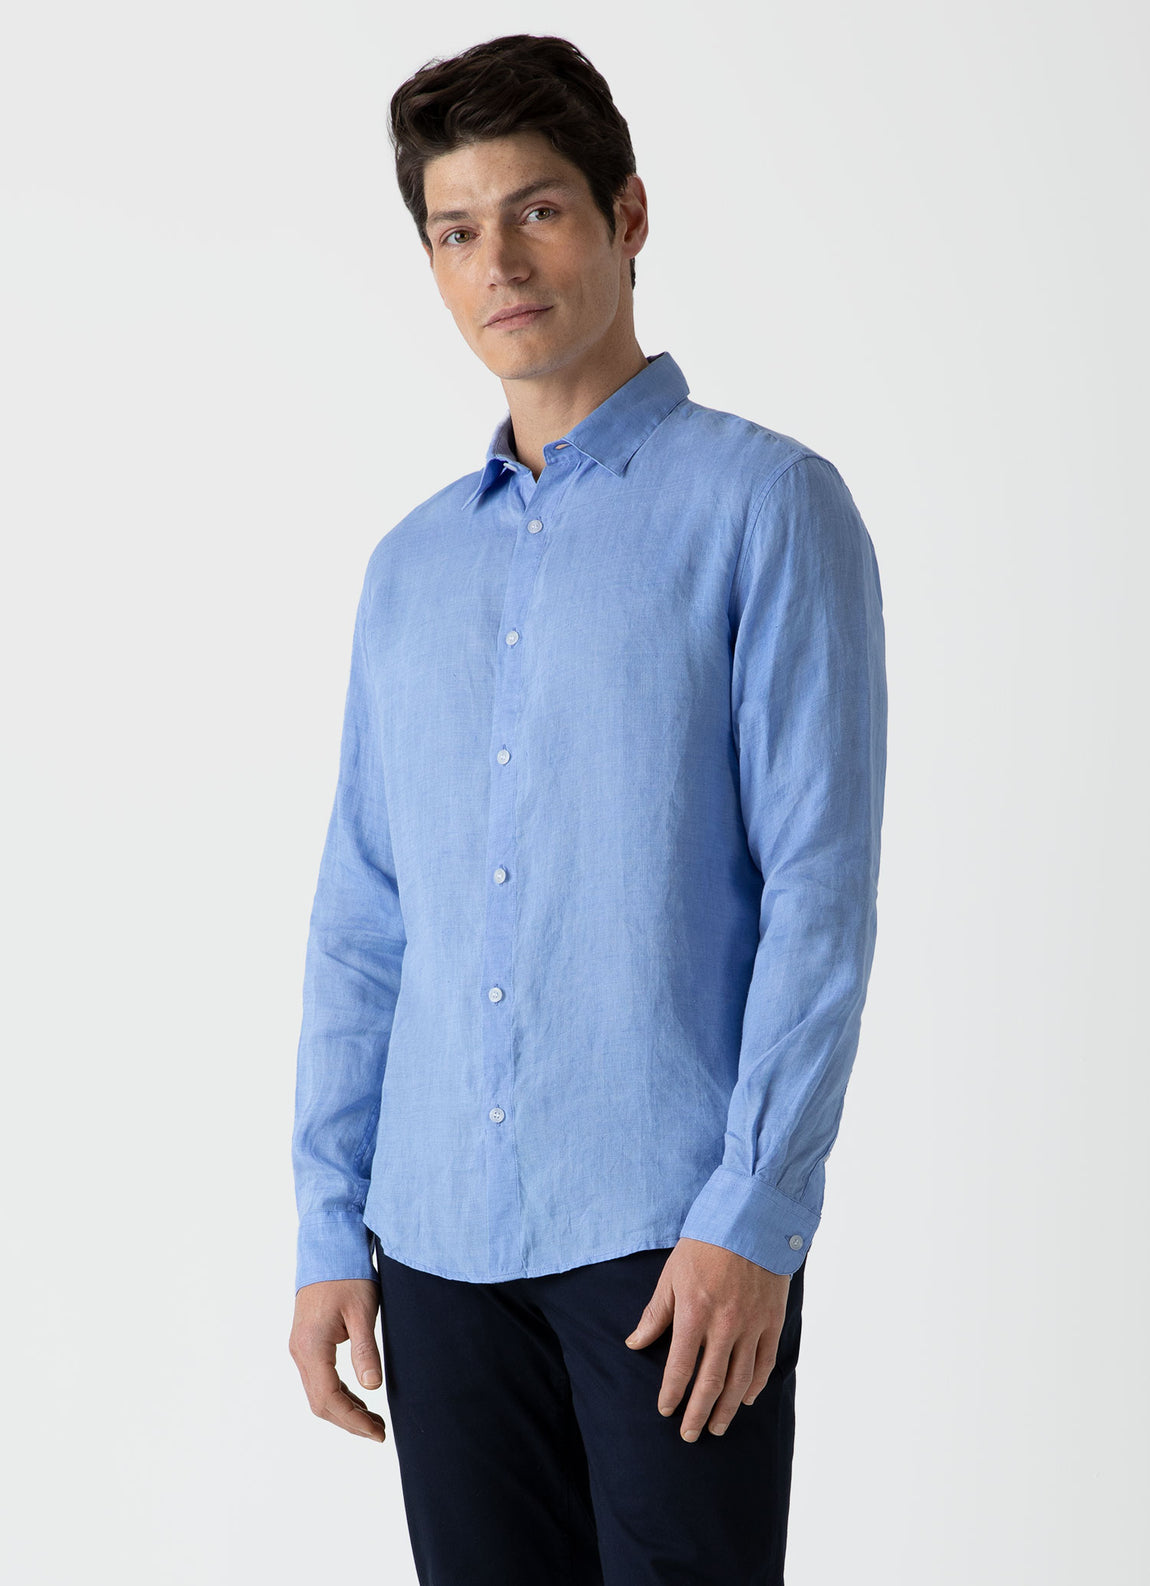 Men's Linen Shirt in Cool Blue | Sunspel